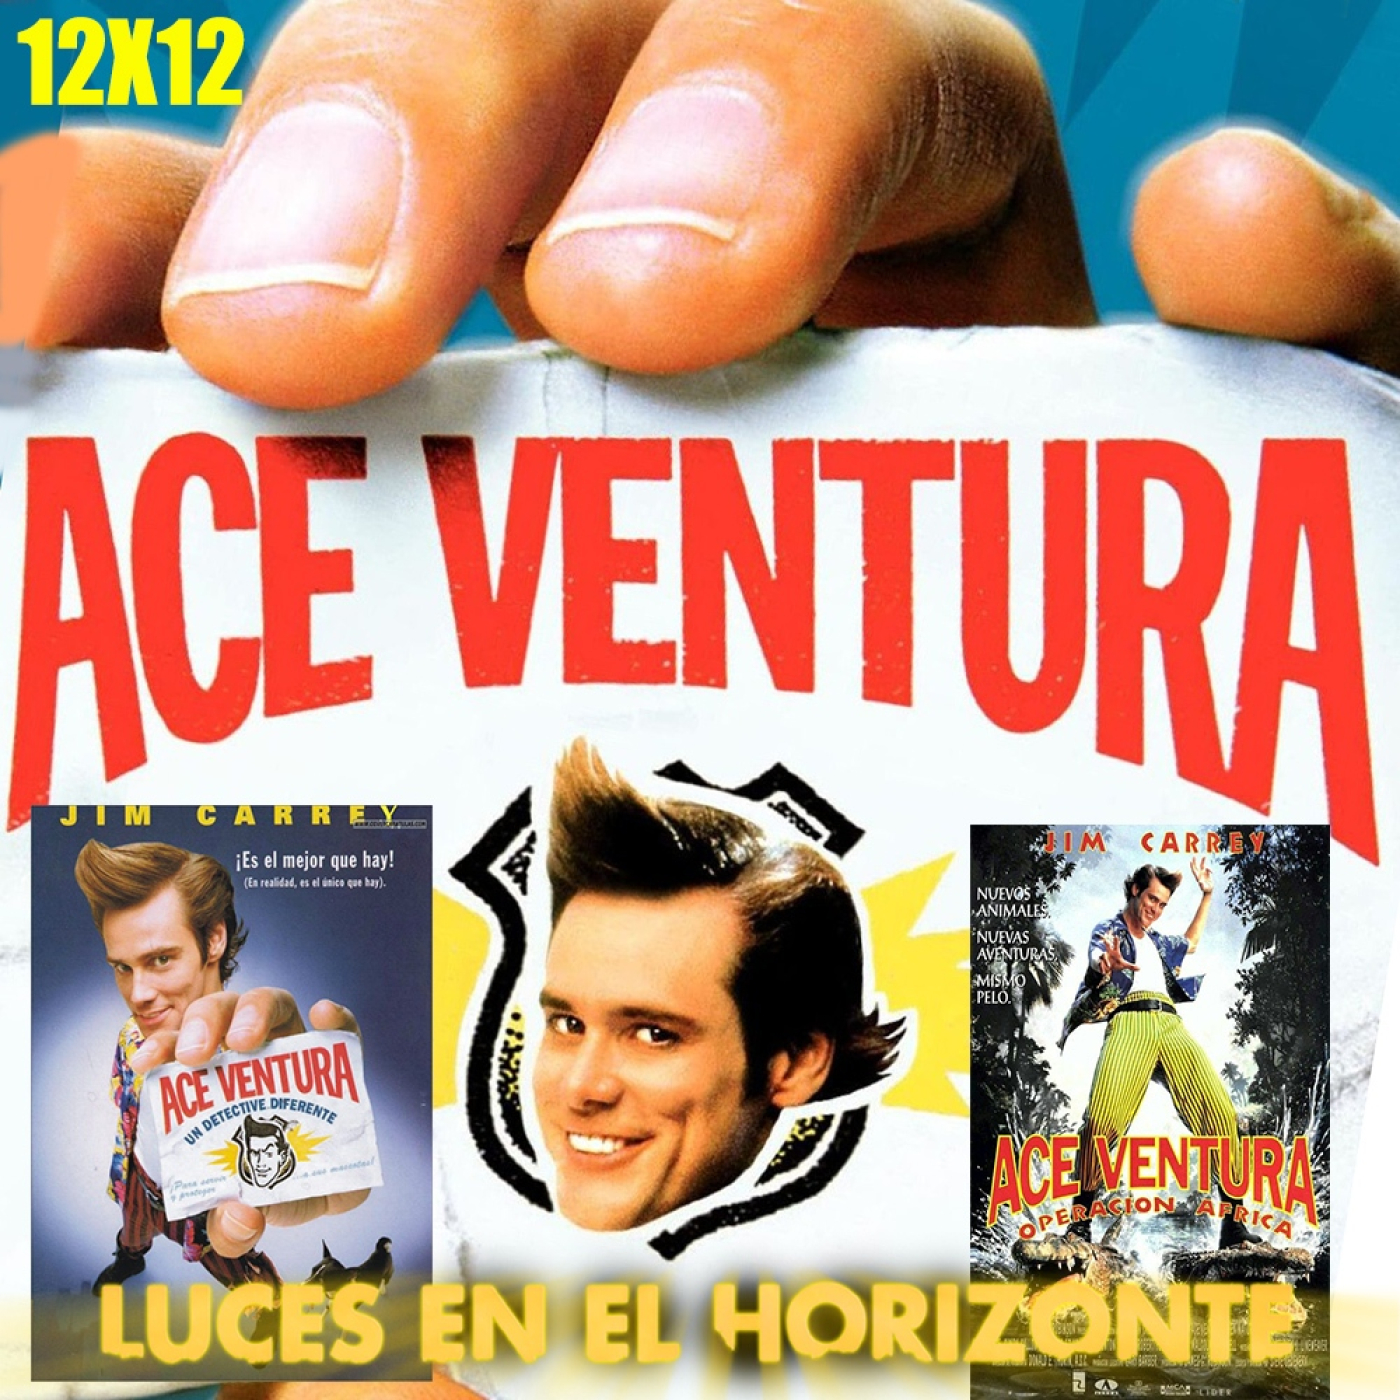 Ace Ventura - Luces en el Horizonte 12X12